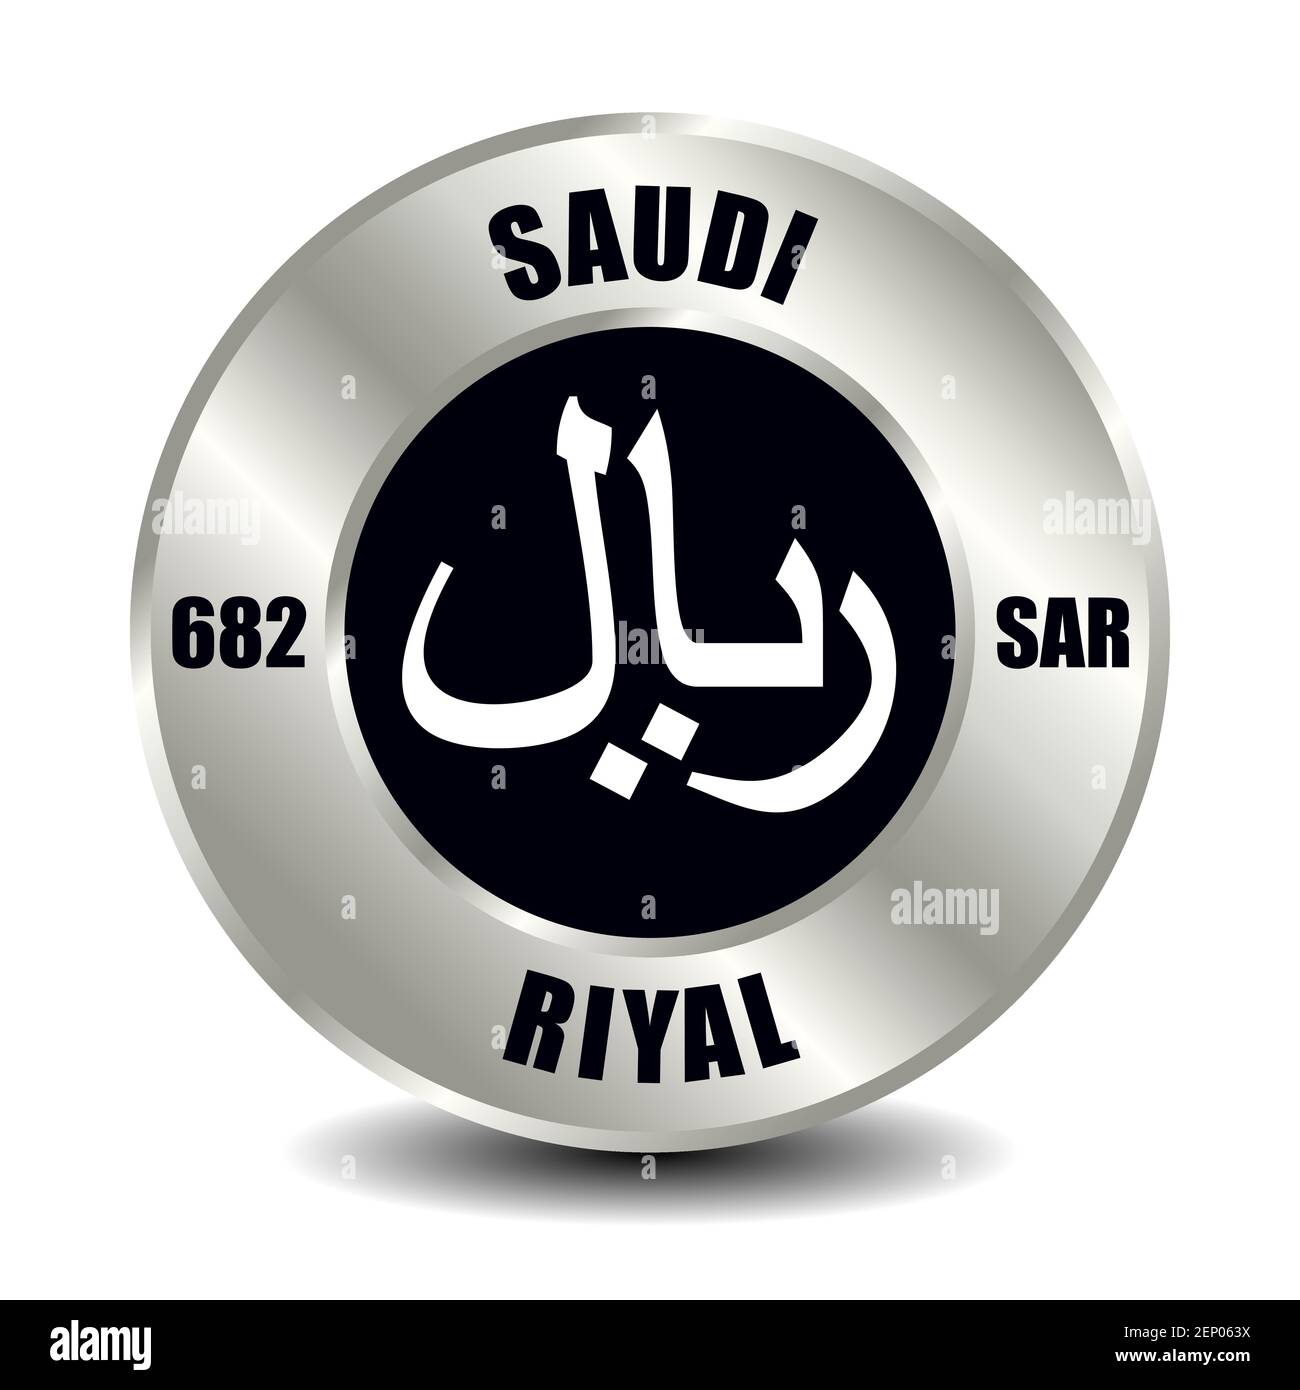 Saudi-Arabien Geldsymbol isoliert auf runder Silbermünze. Vektorzeichen des Währungssymbols mit internationalem ISO-Code und Abkürzung Stock Vektor